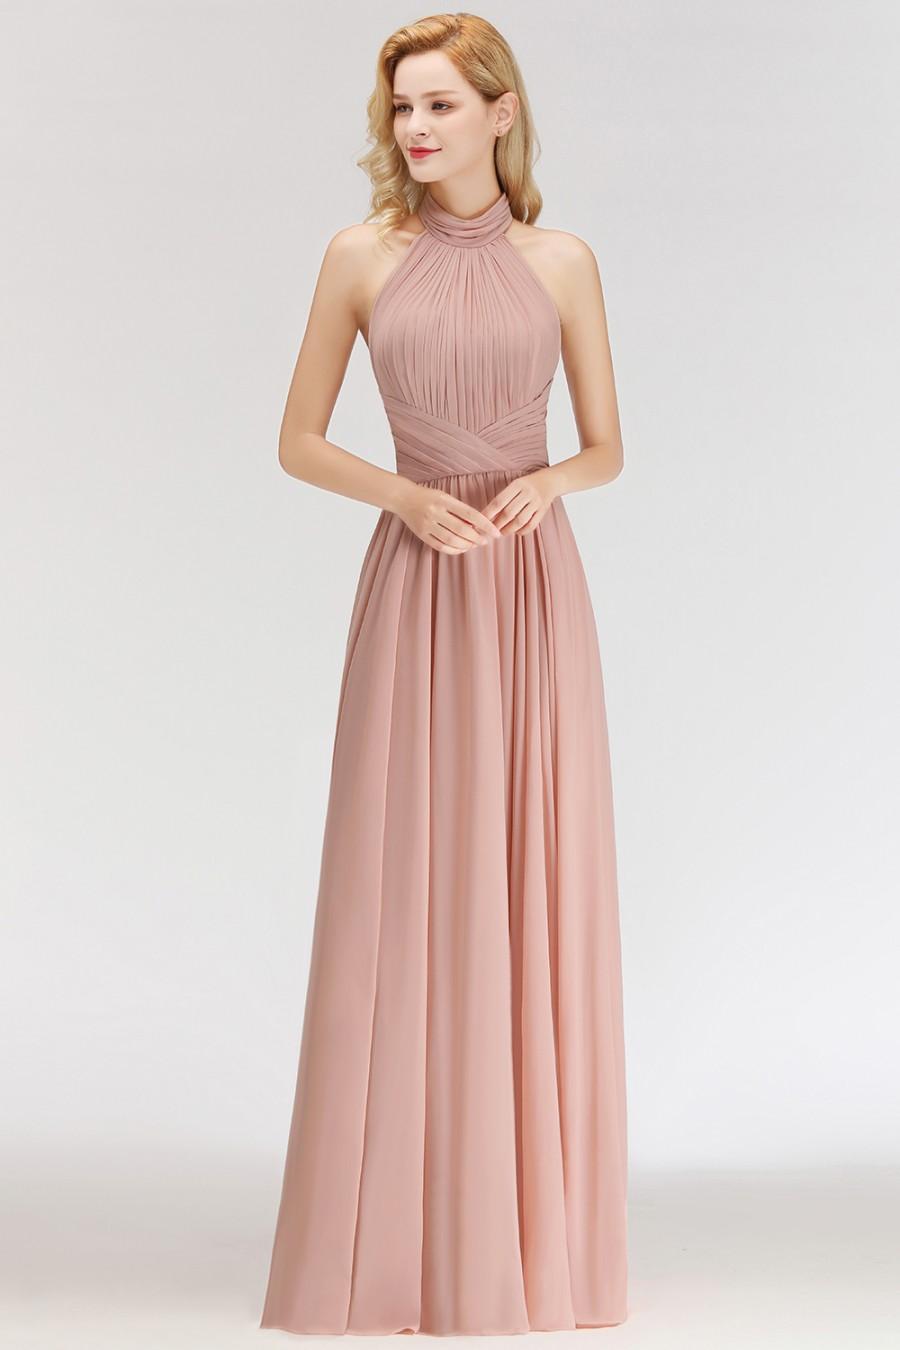 Mariage - Modern Rosa Long Chiffon Brautjungfernkleider Etuikleid Kleider für Brautjunfern Modellnummer: BM0043